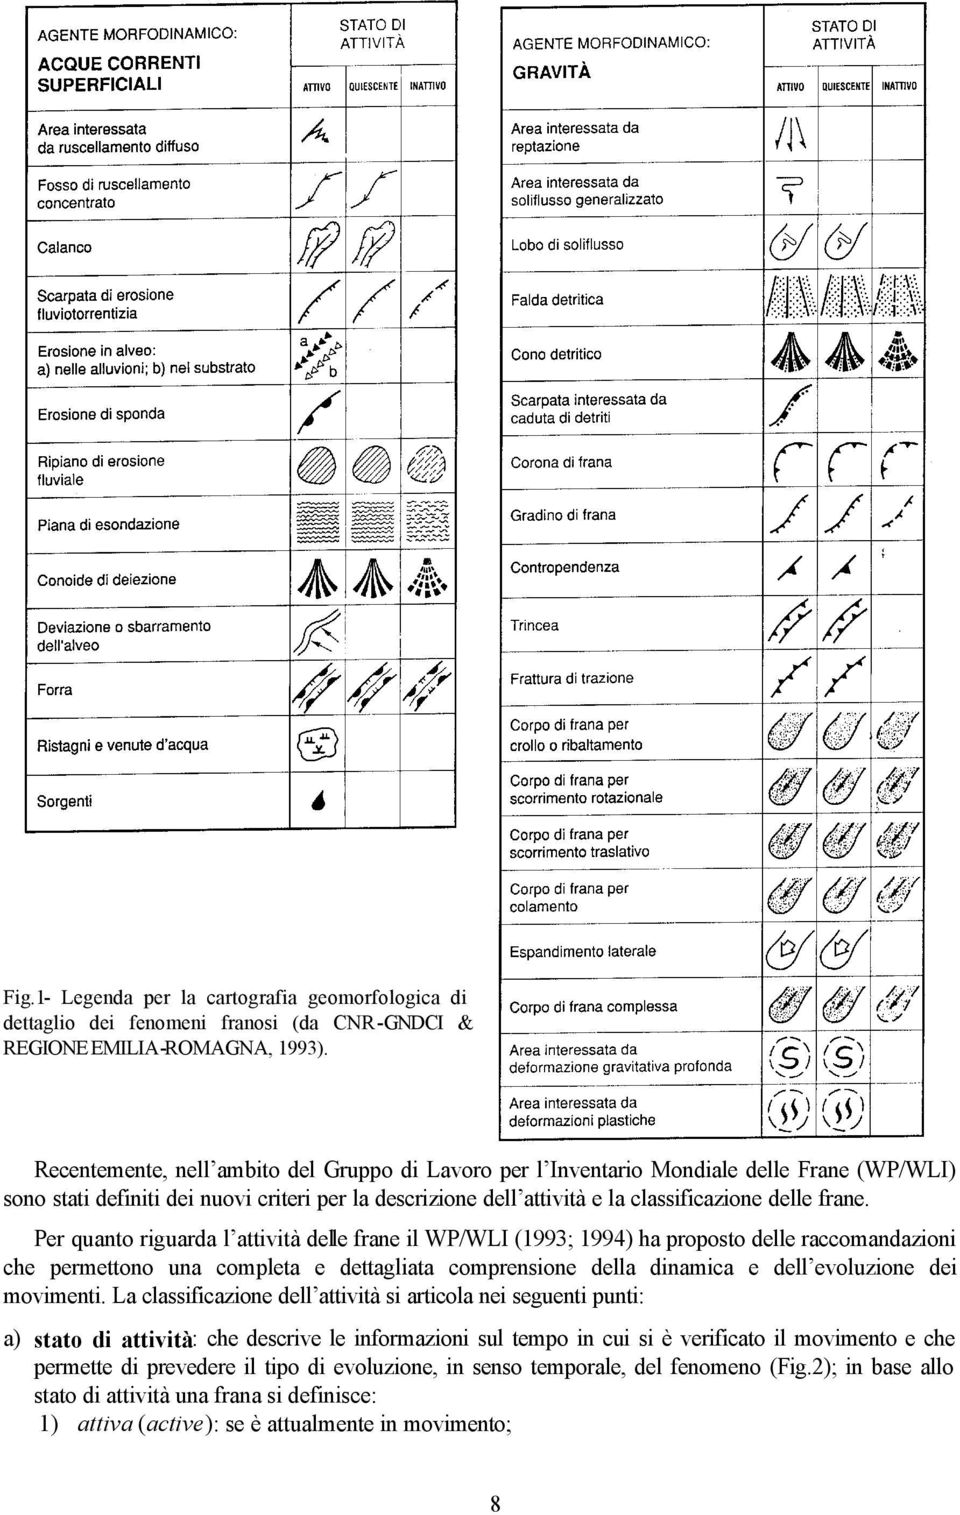 Per quanto riguarda l attività delle frane il WP/WLI (1993; 1994) ha proposto delle raccomandazioni che permettono una completa e dettagliata comprensione della dinamica e dell evoluzione dei